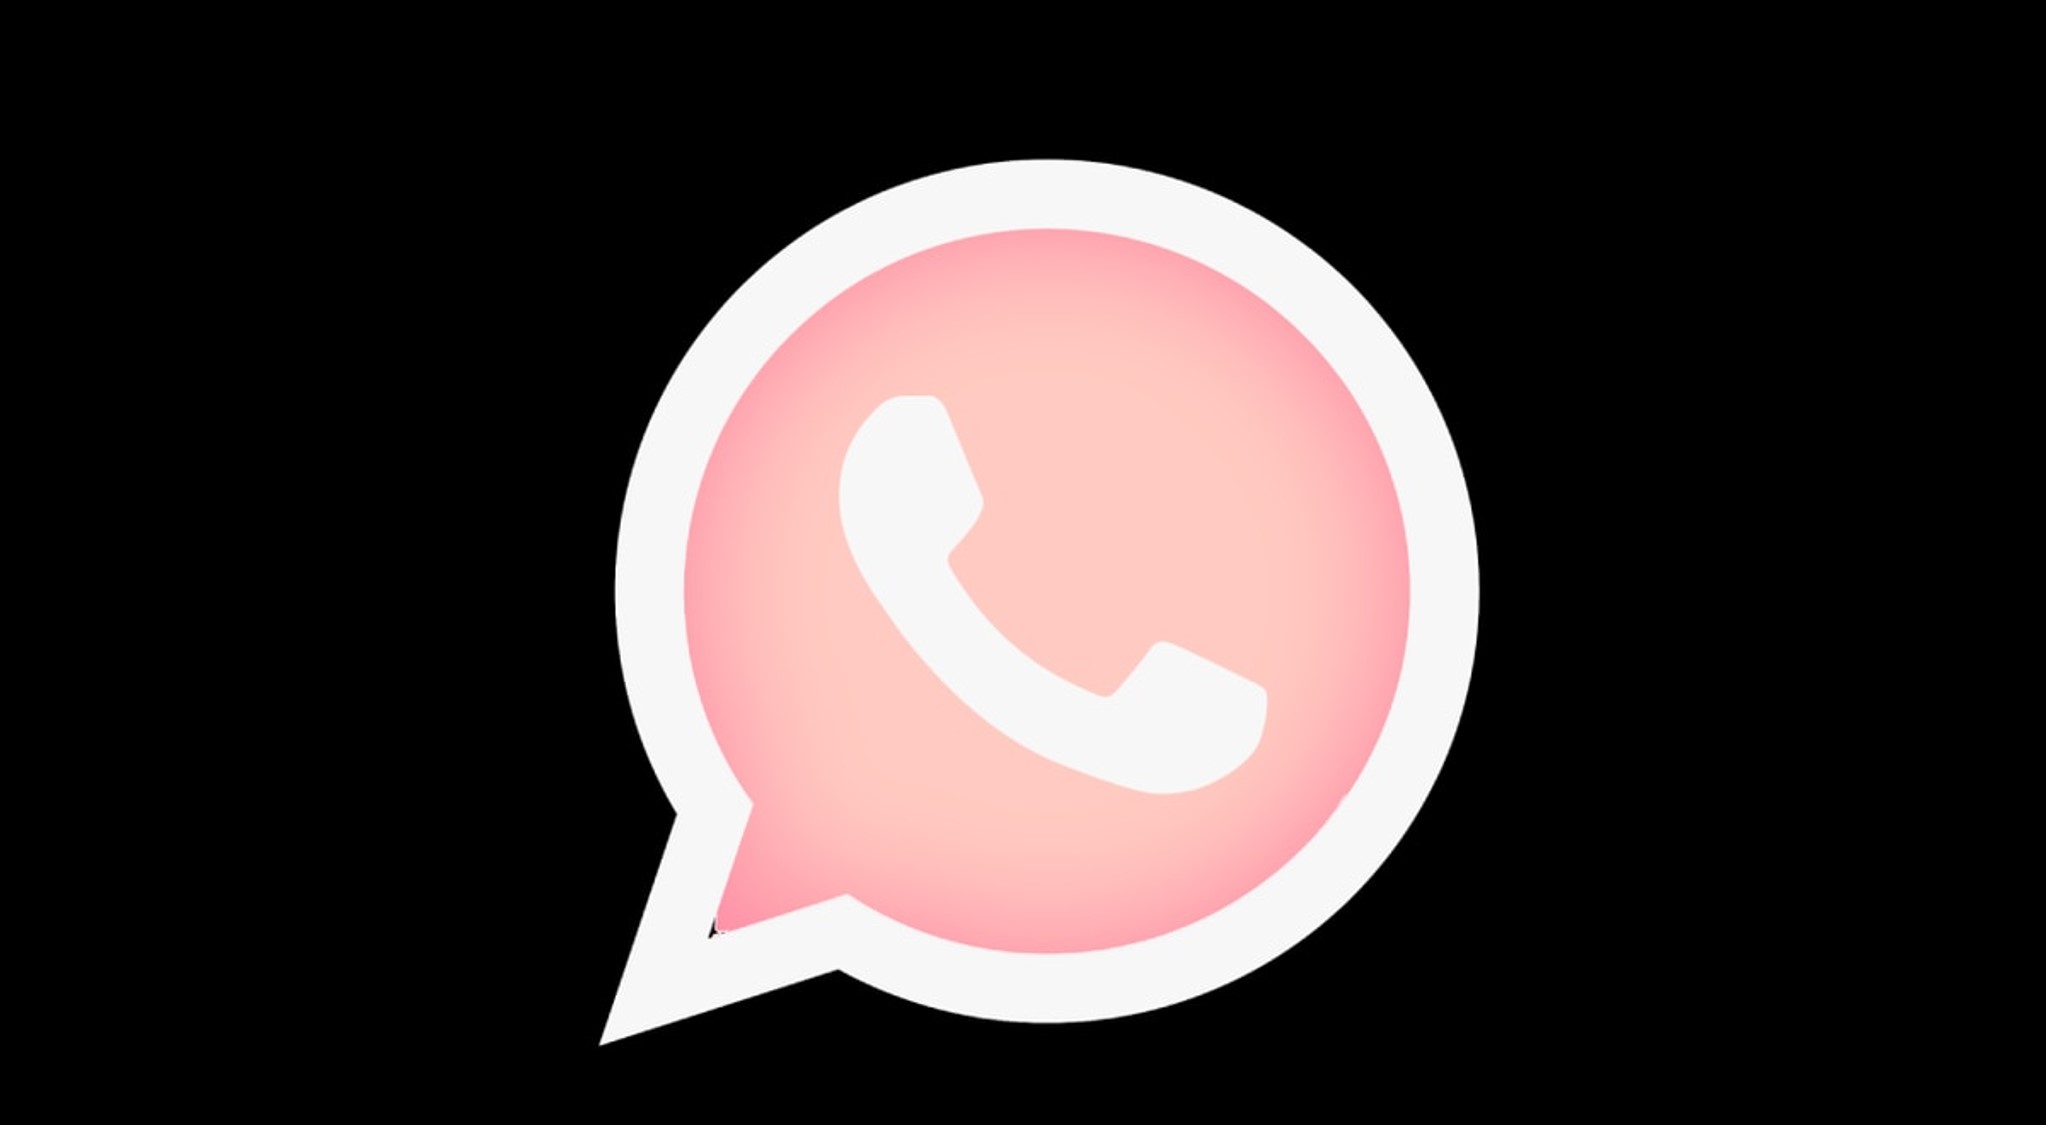 WhatsApp: cómo cambiar de color el logo